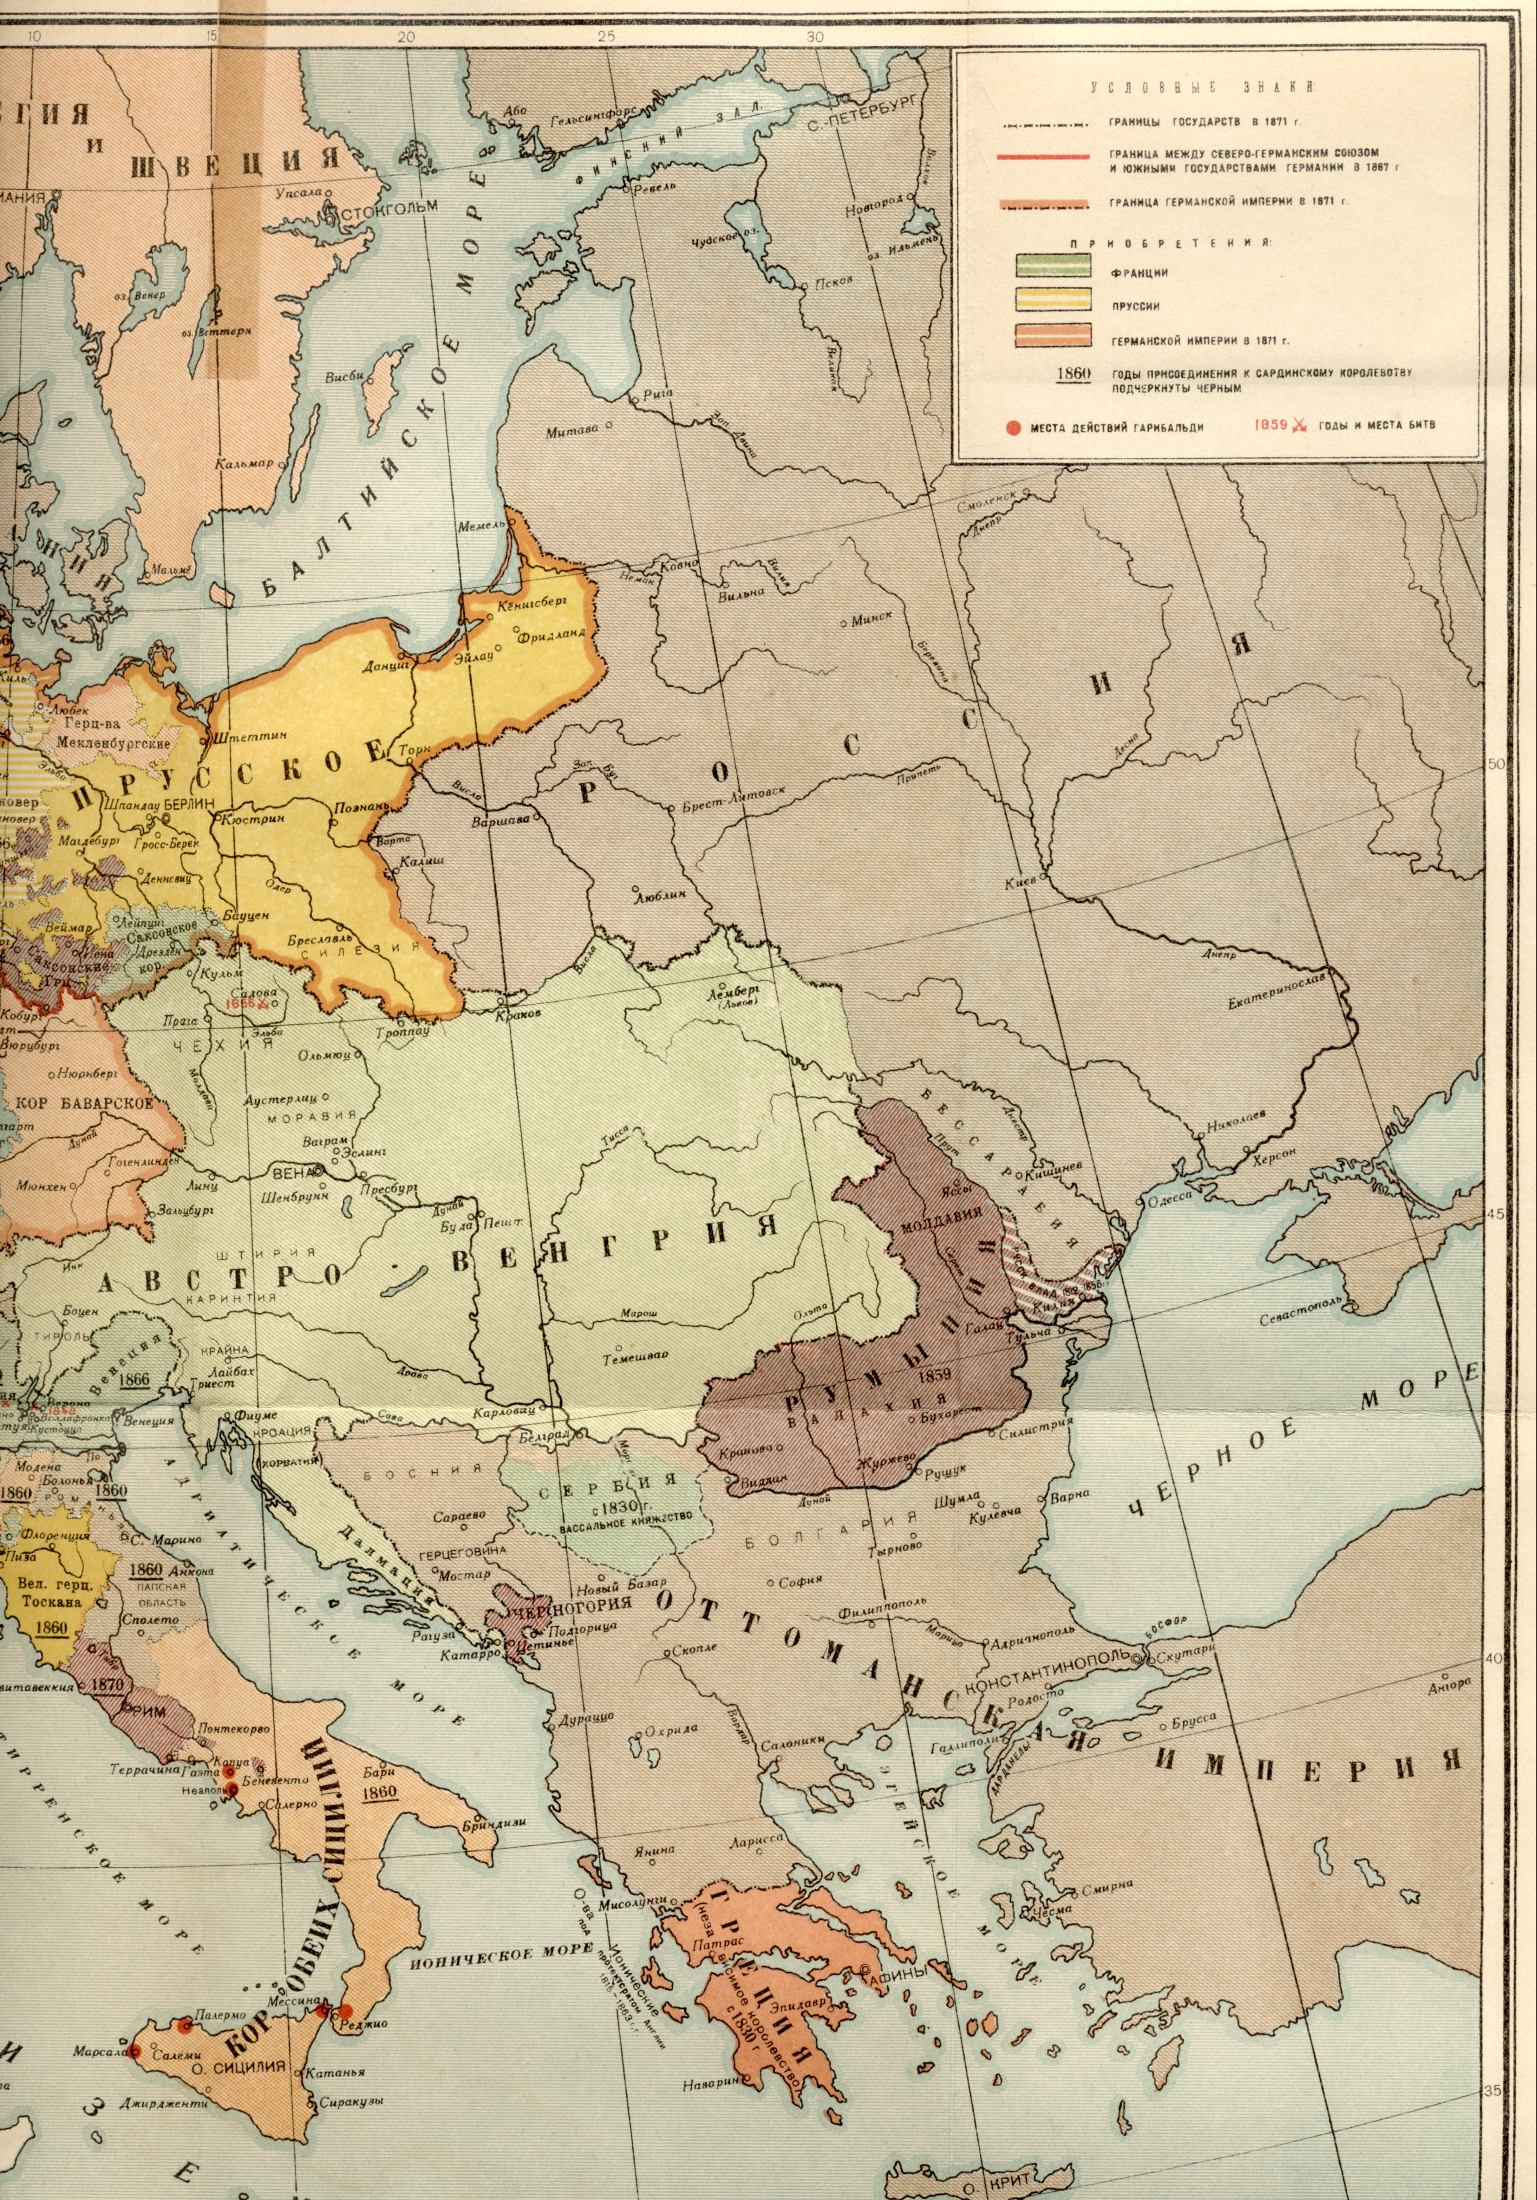 1871 god.Politicheskaya world map - la carte d'Europe en 1871 - l'achèvement de l'unification de l'Italie et de la réunification de l'Allemagne, B0